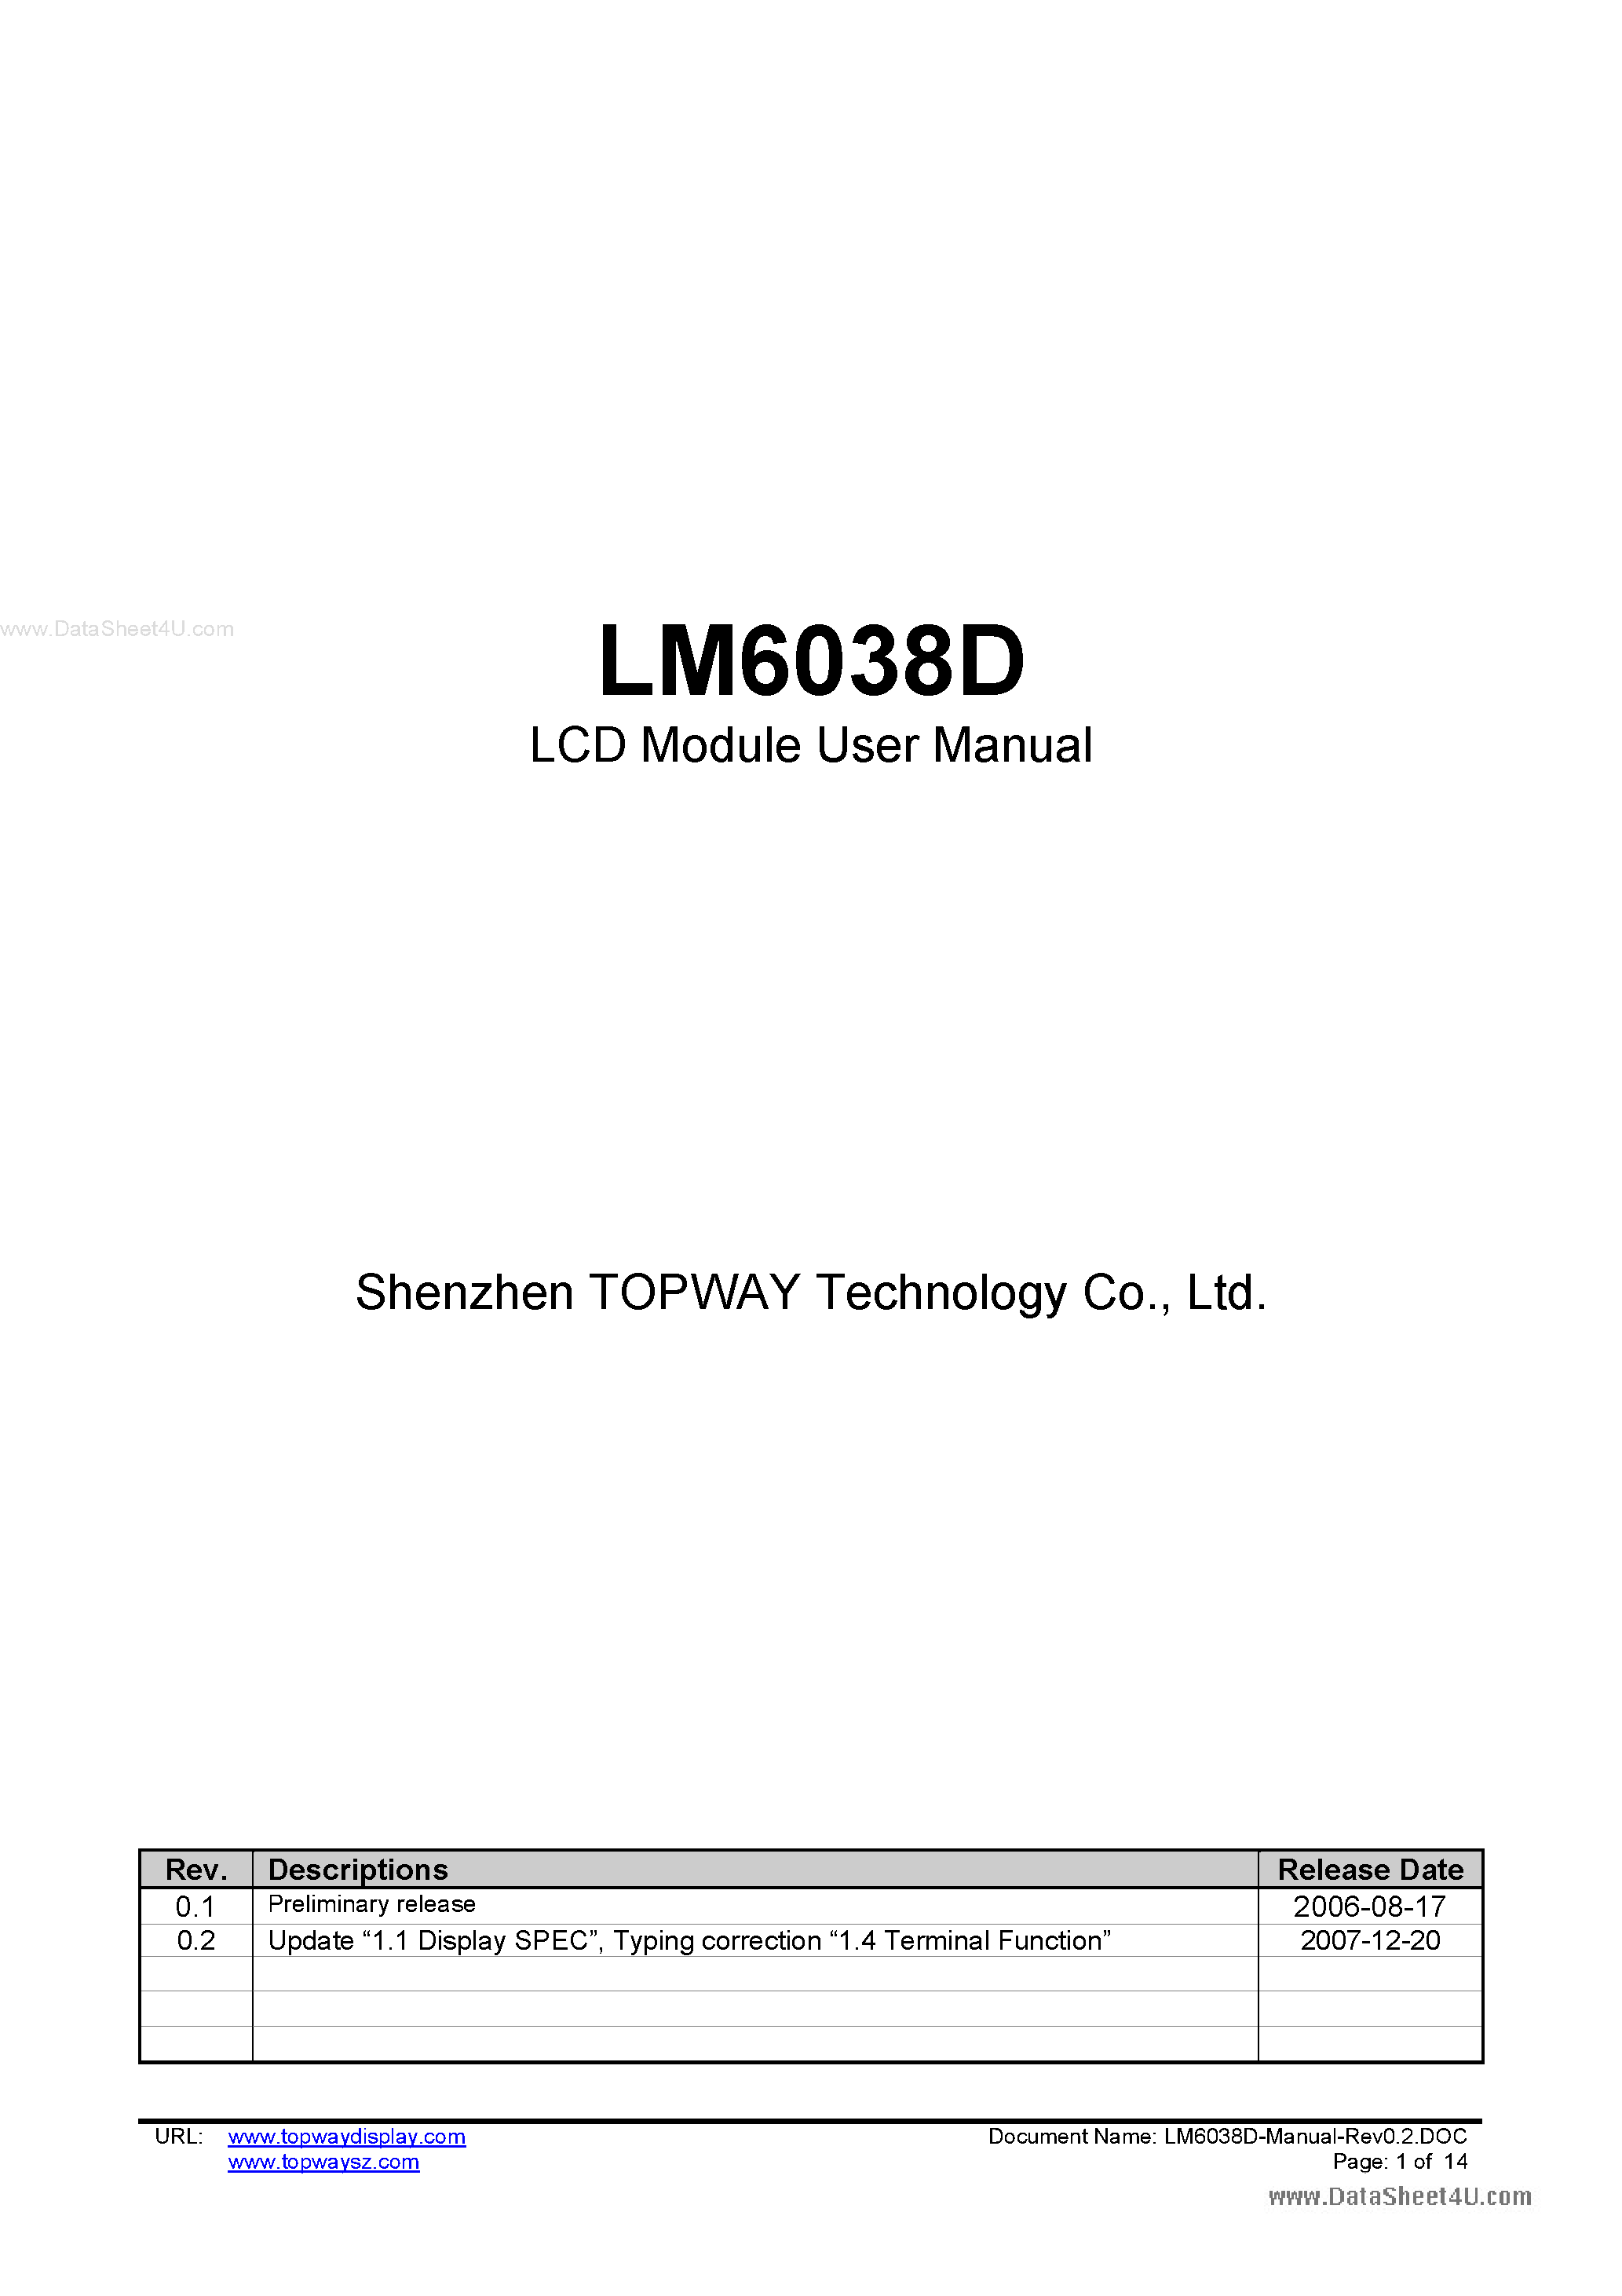 Даташит LM6038D - LCD Module страница 1